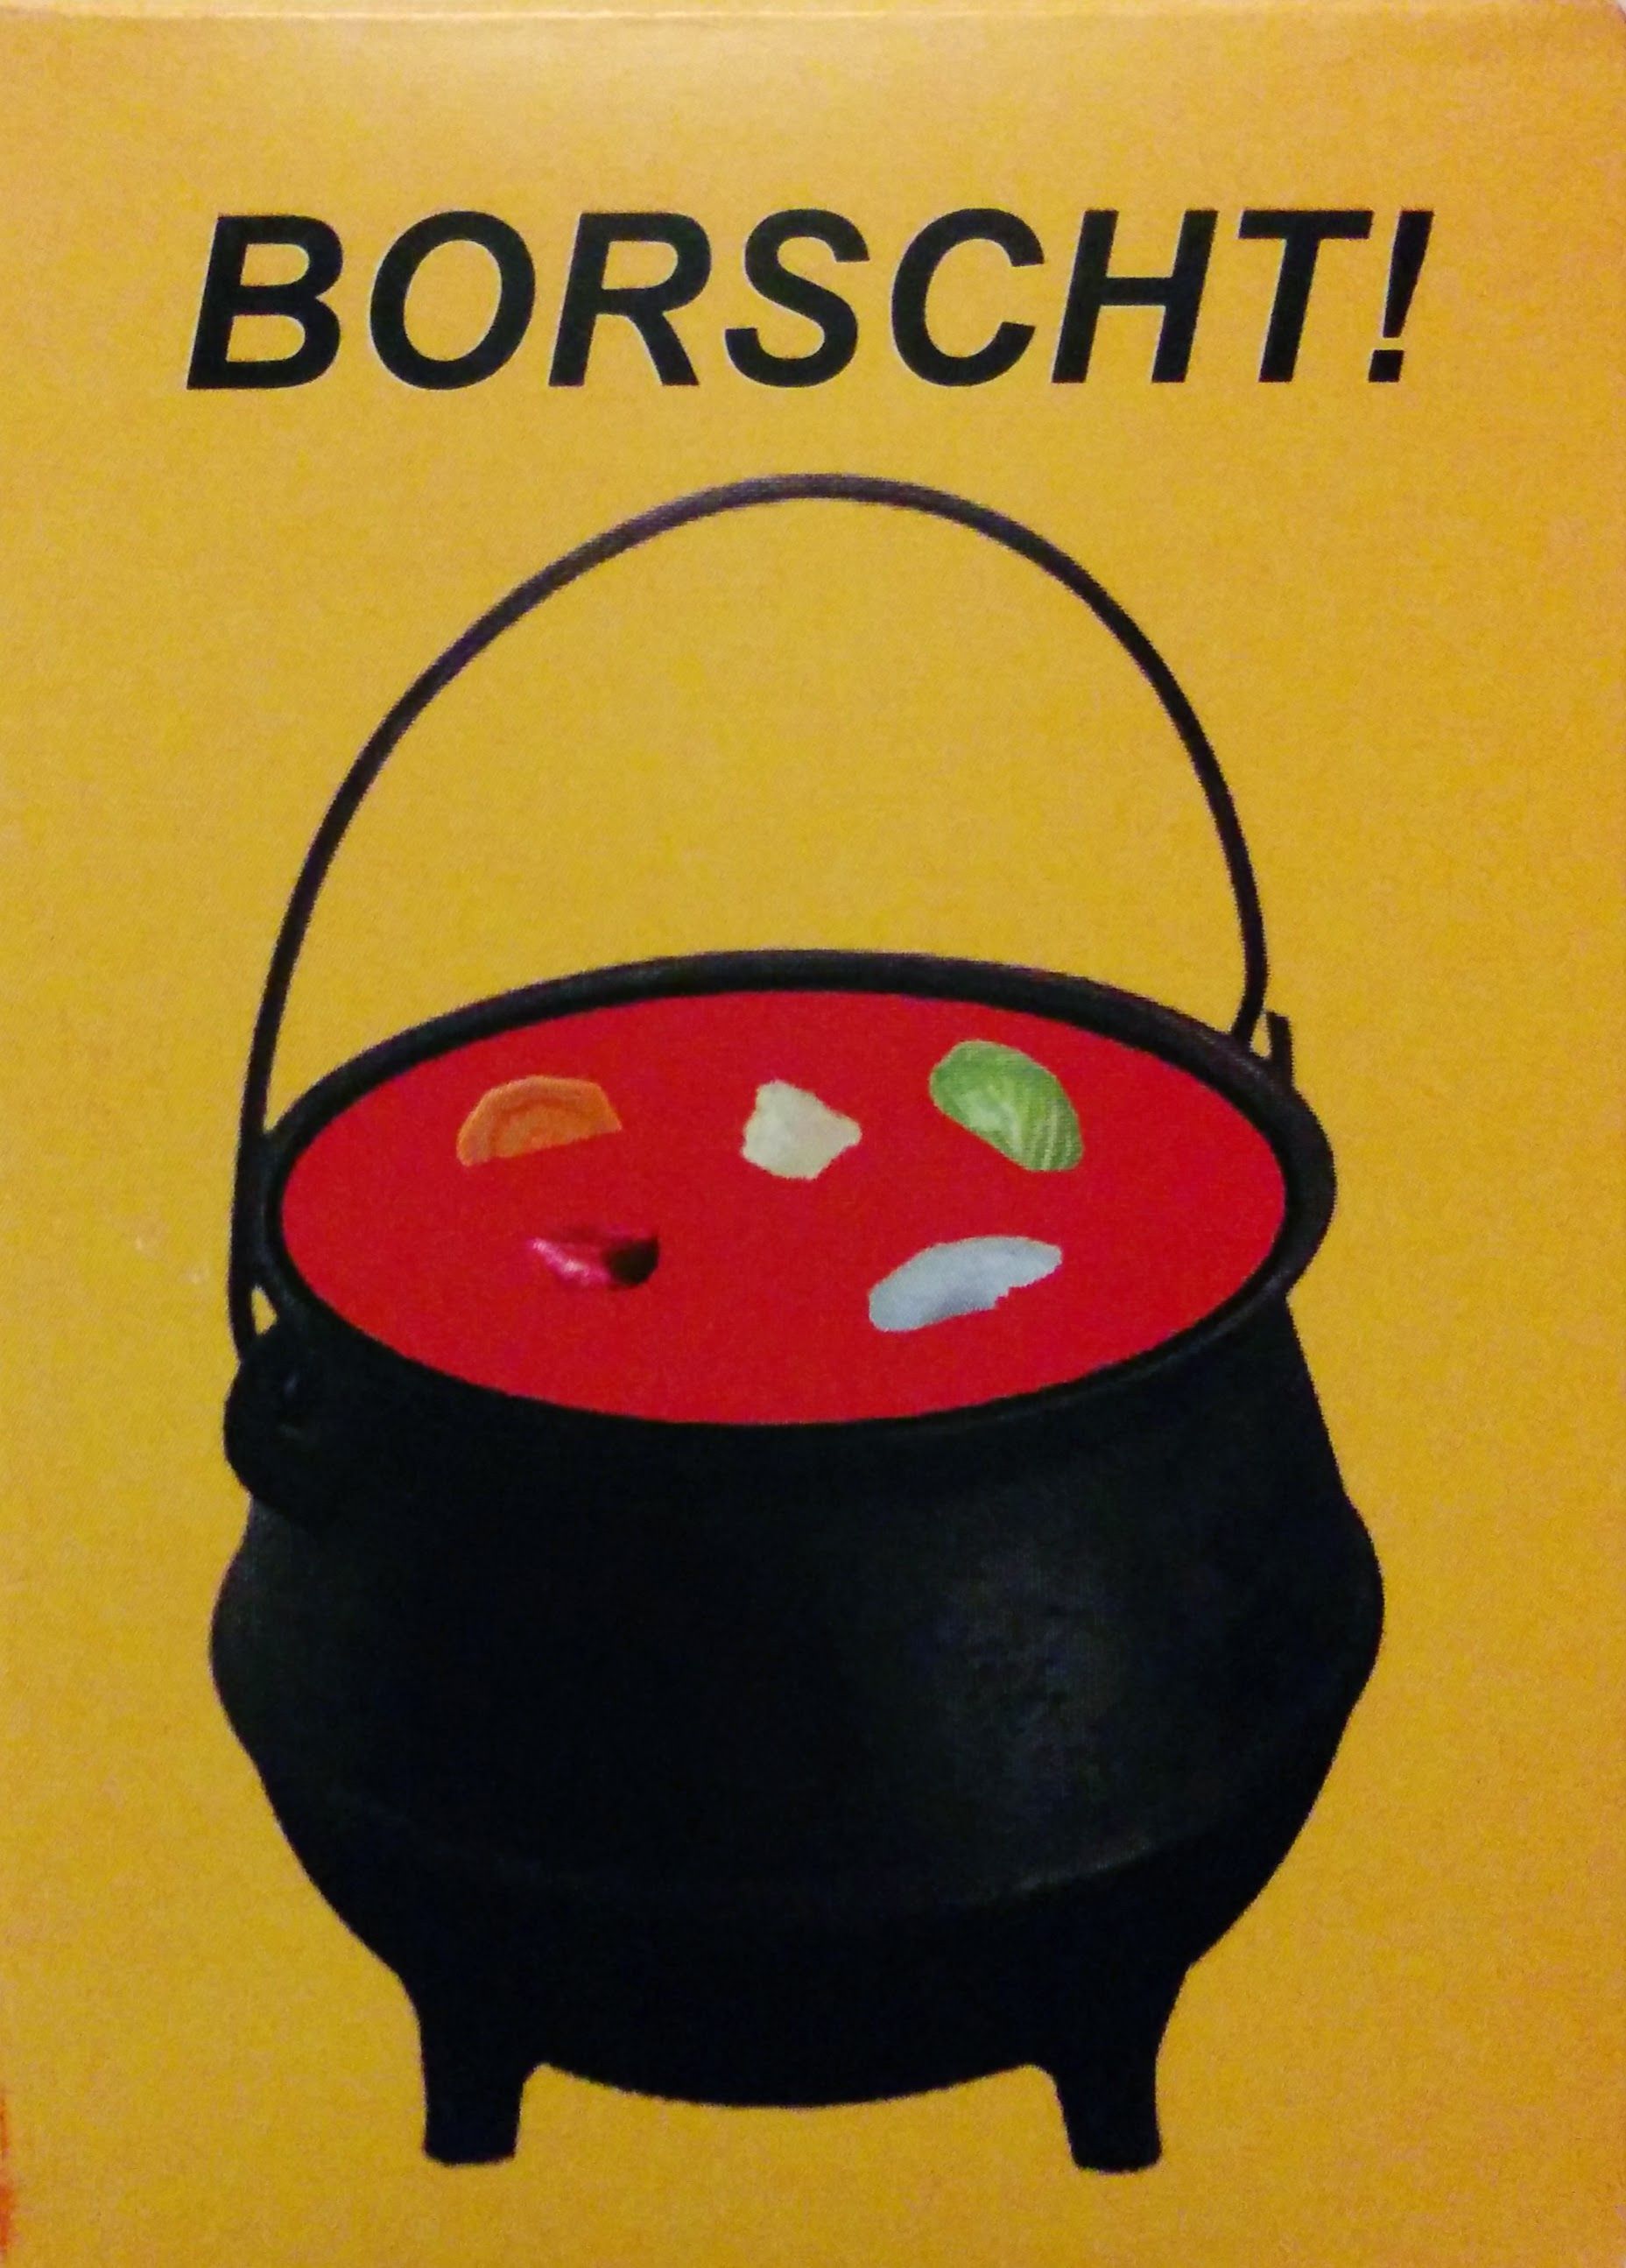 Borscht!